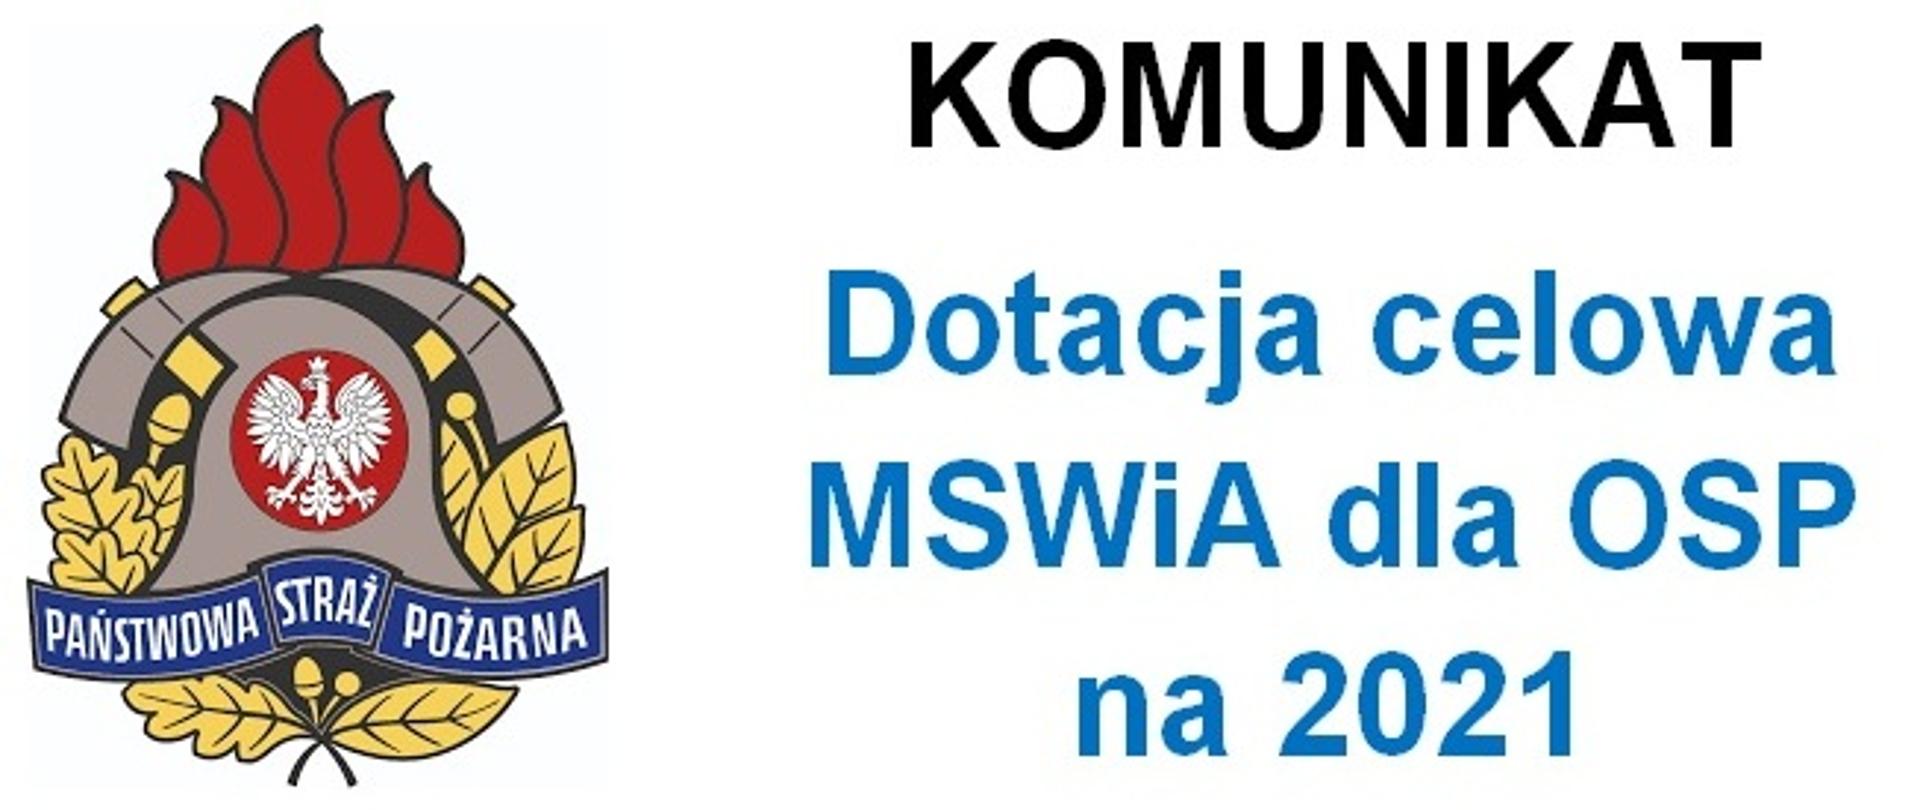 Na białym tle kolorowe logo Państwowej Straży Pożarnej i tekst Komunikat dotacja celowa MSWiA dla OSP na 2021.